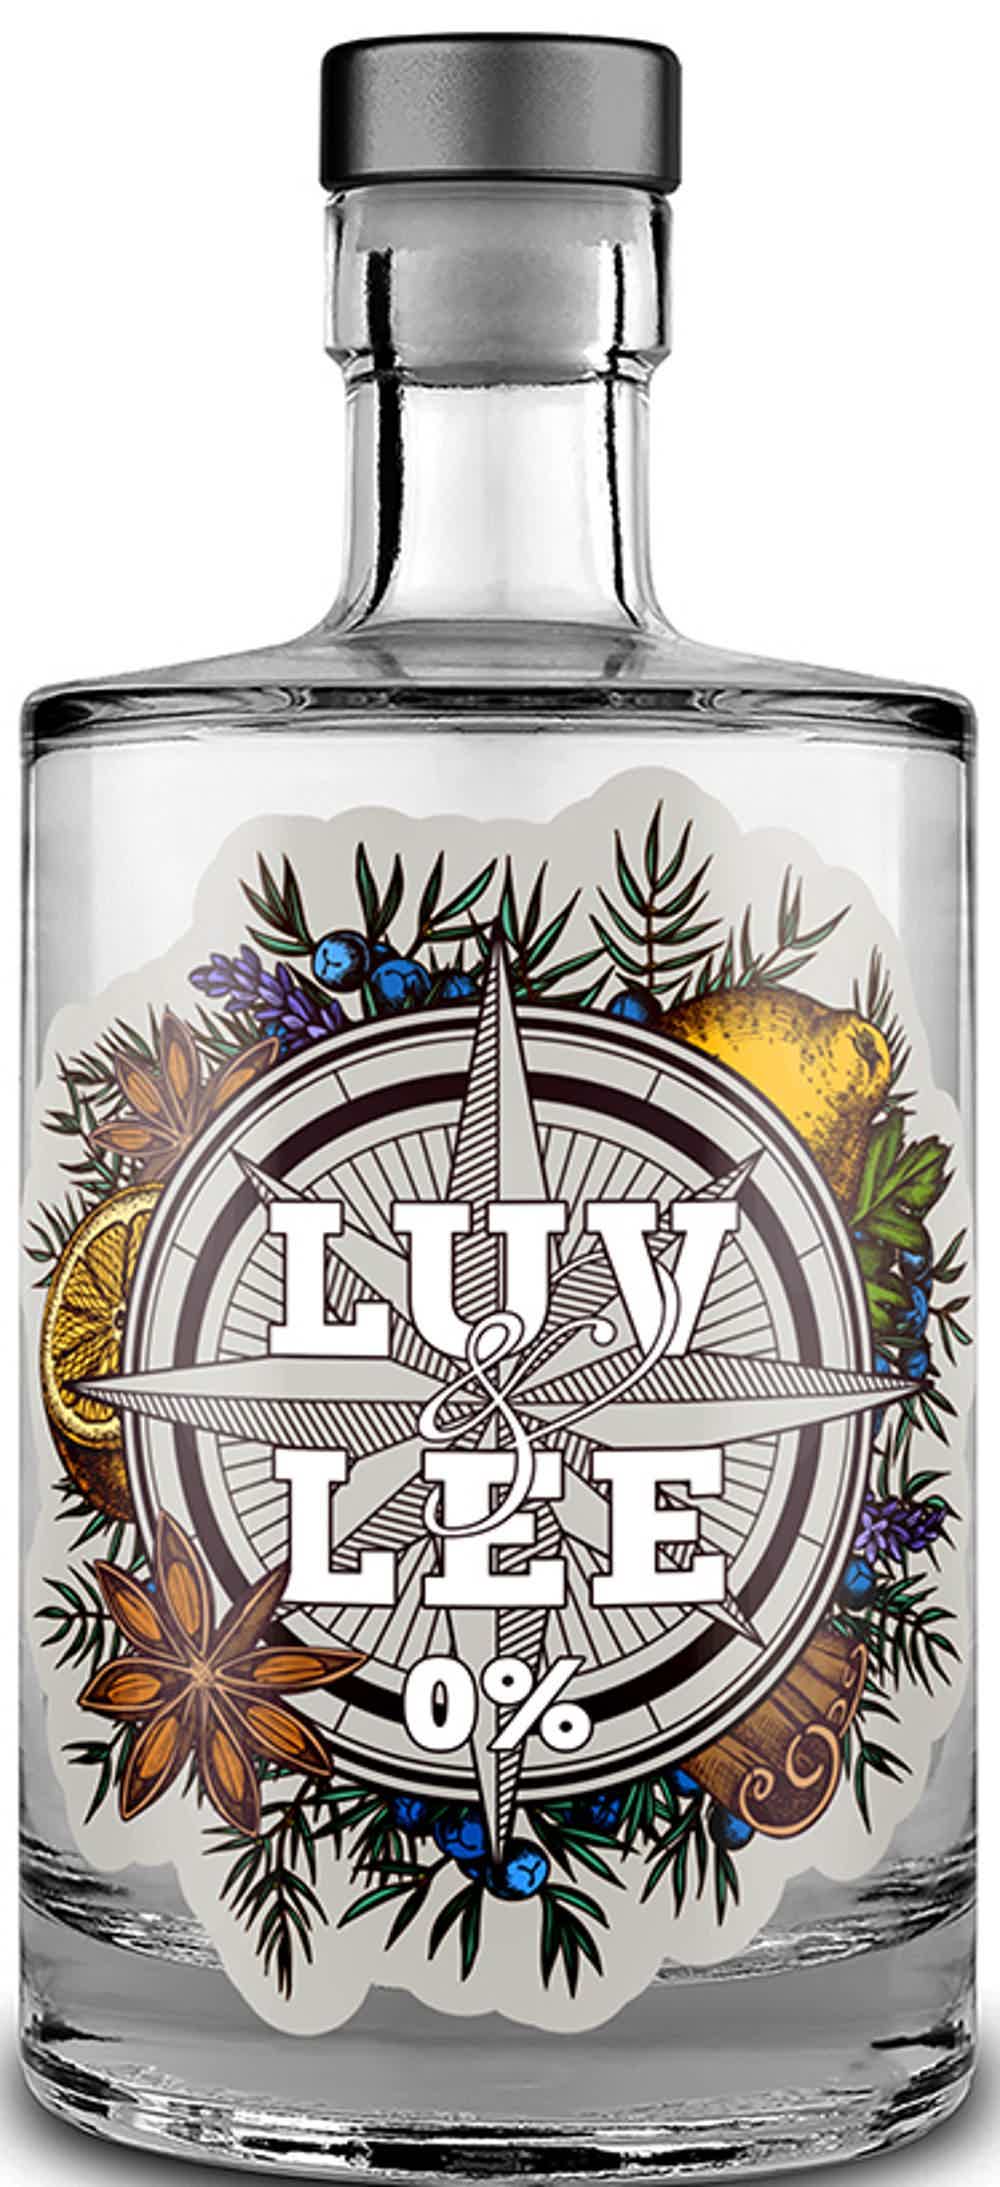 Luv & Lee No-Alc Gin 0.0% 0.5L, Non alcohol